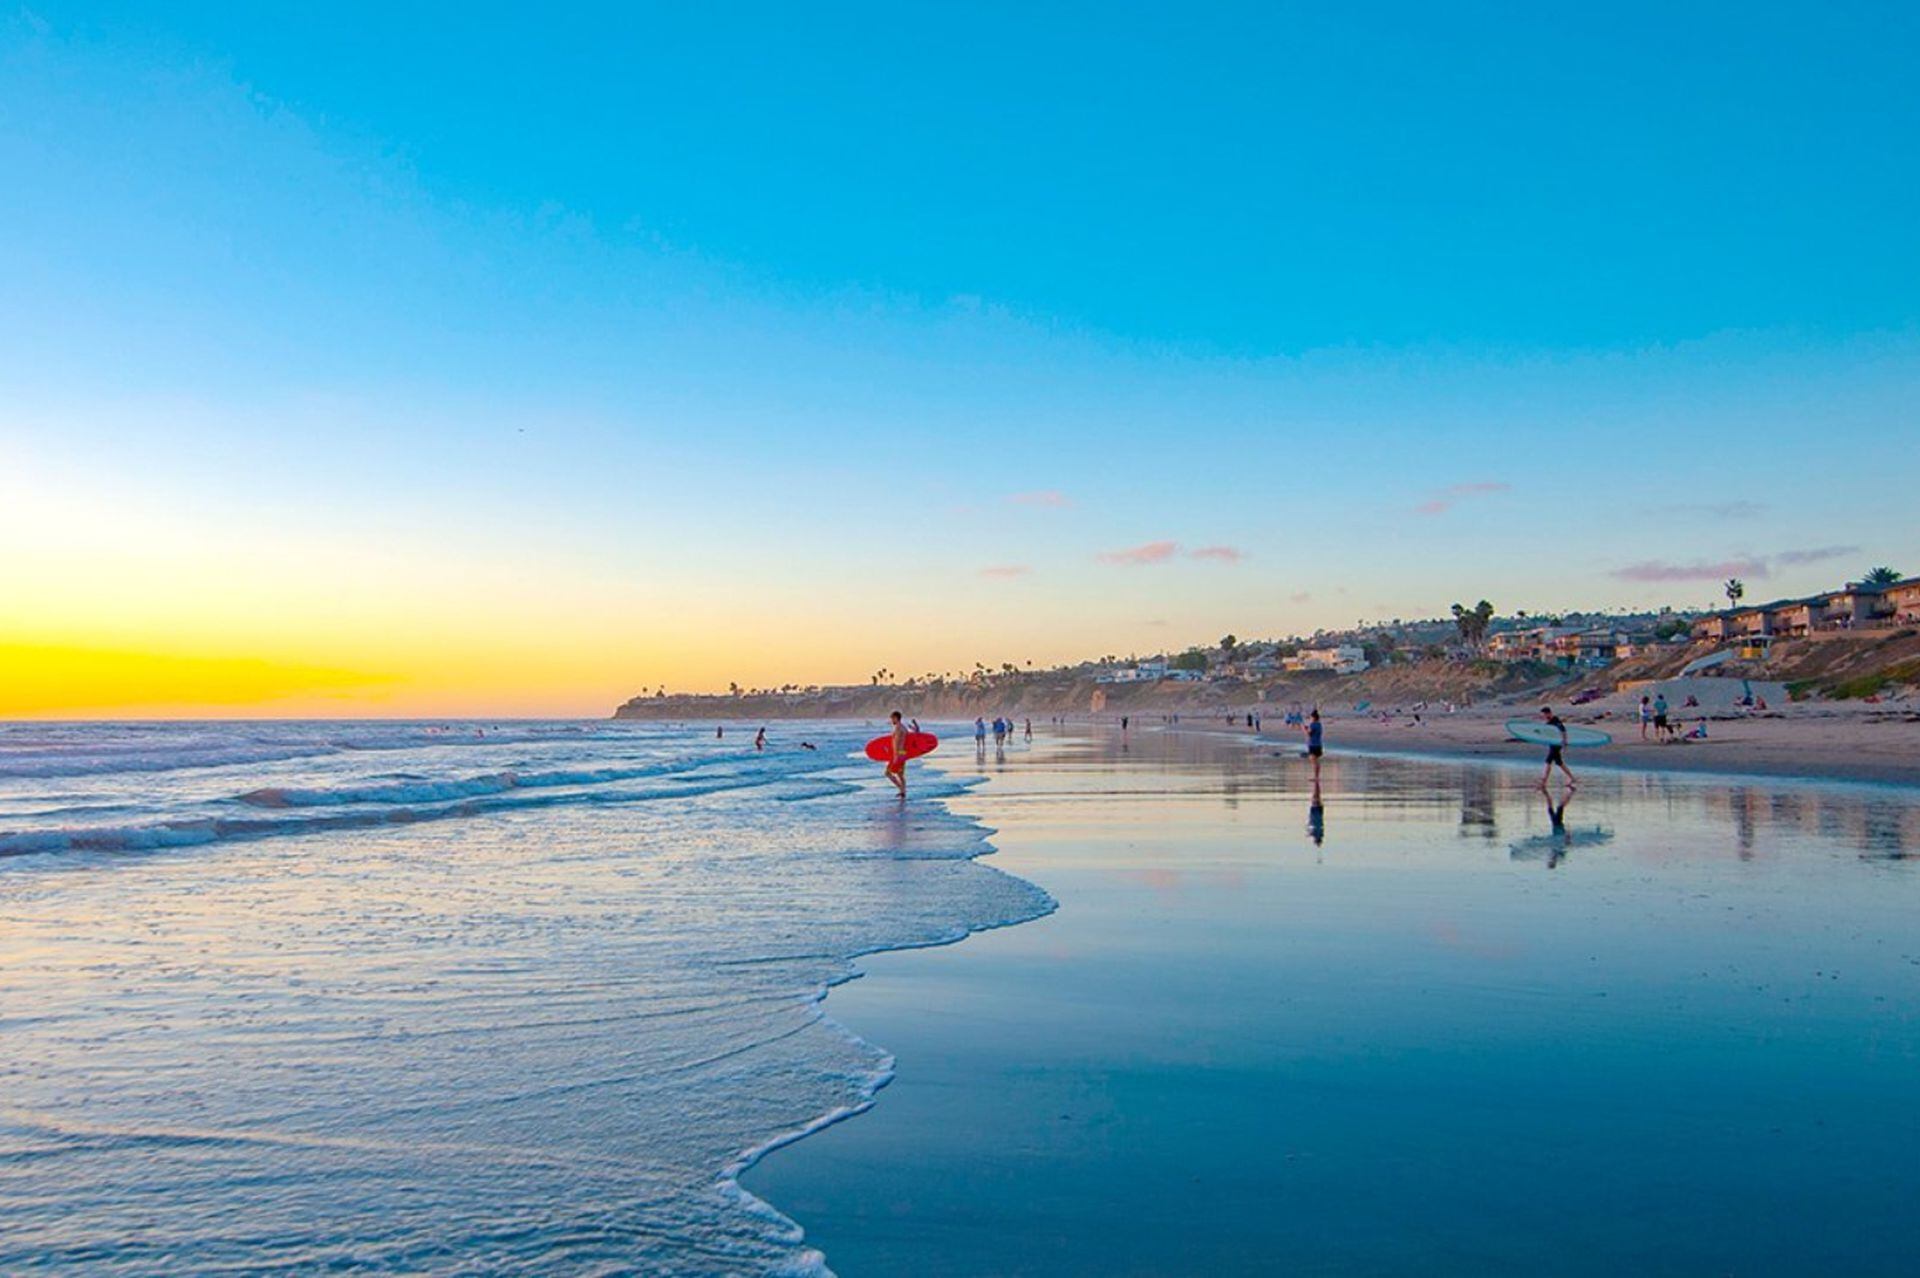 San Diego ha sido llamada «el lugar de nacimiento de California». Es conocida por su clima estable y cálido a lo largo del año, puertos naturales de aguas profundas, largas playas, la cooperación con la Marina de los Estados Unidos y un crecimiento de la industria de salud y biotecnología.